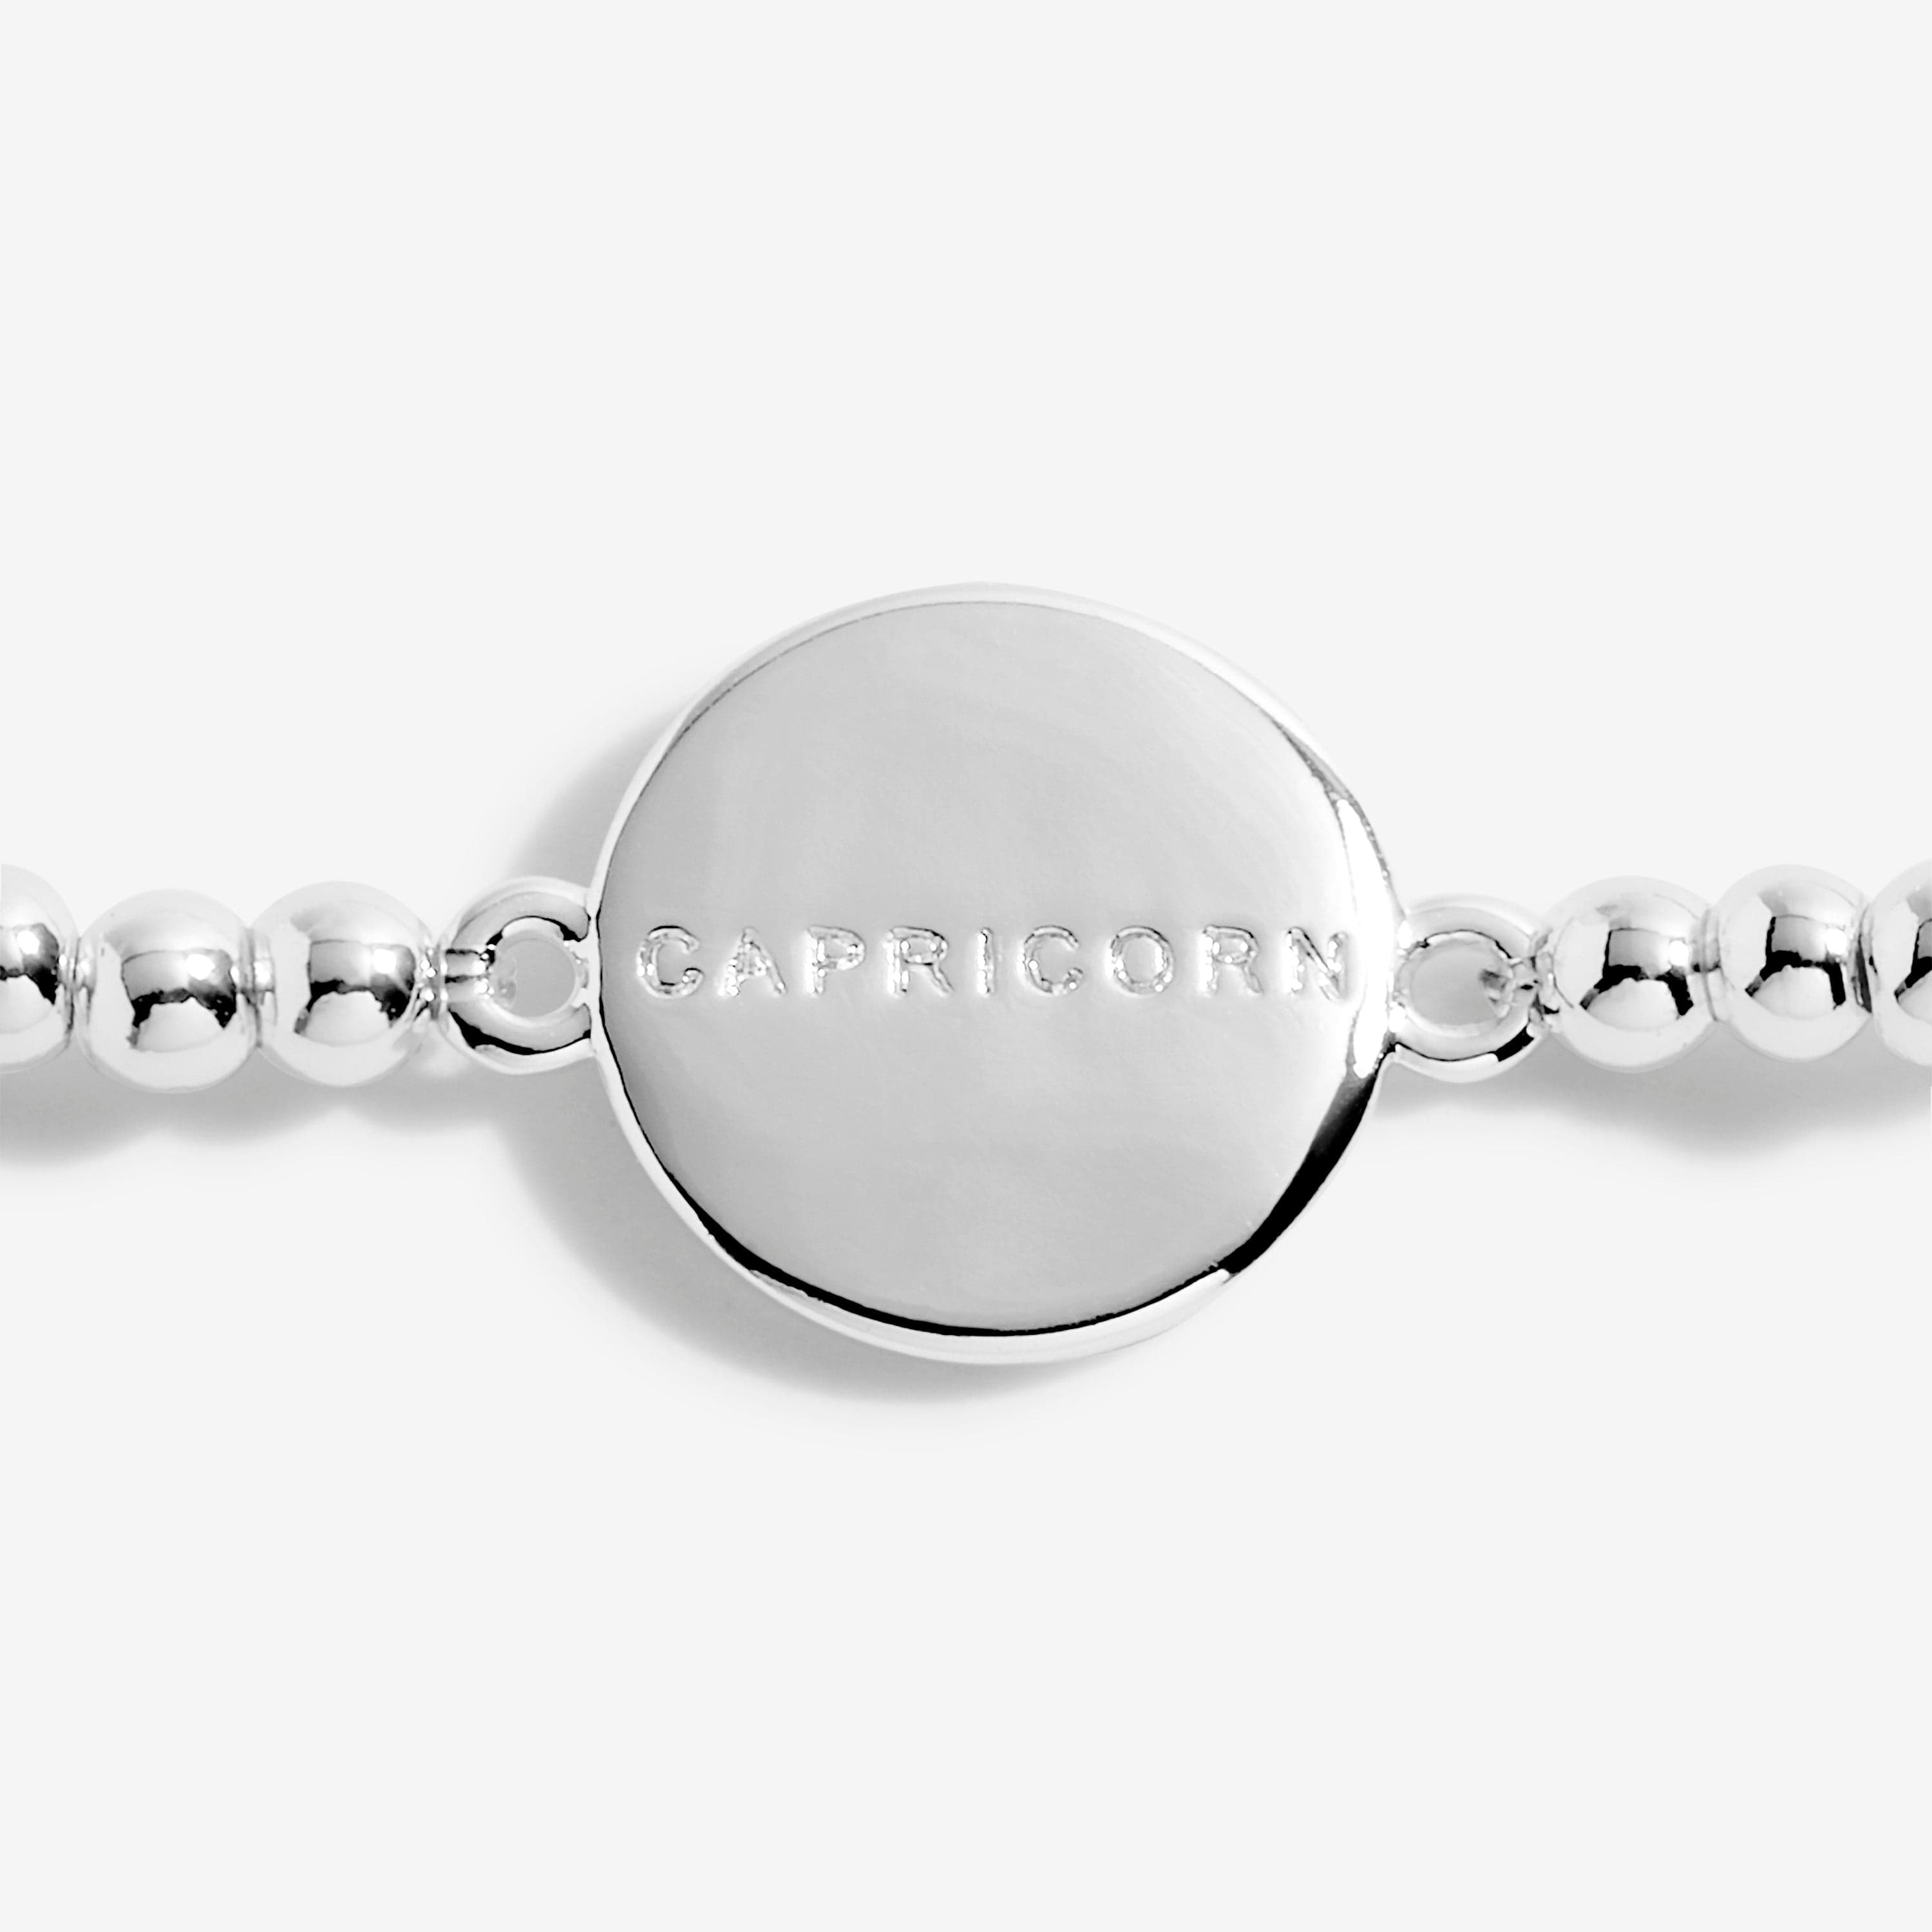 Joma Jewellery Bracelet Joma Jewellery Star Sign Bracelet - Capricorn